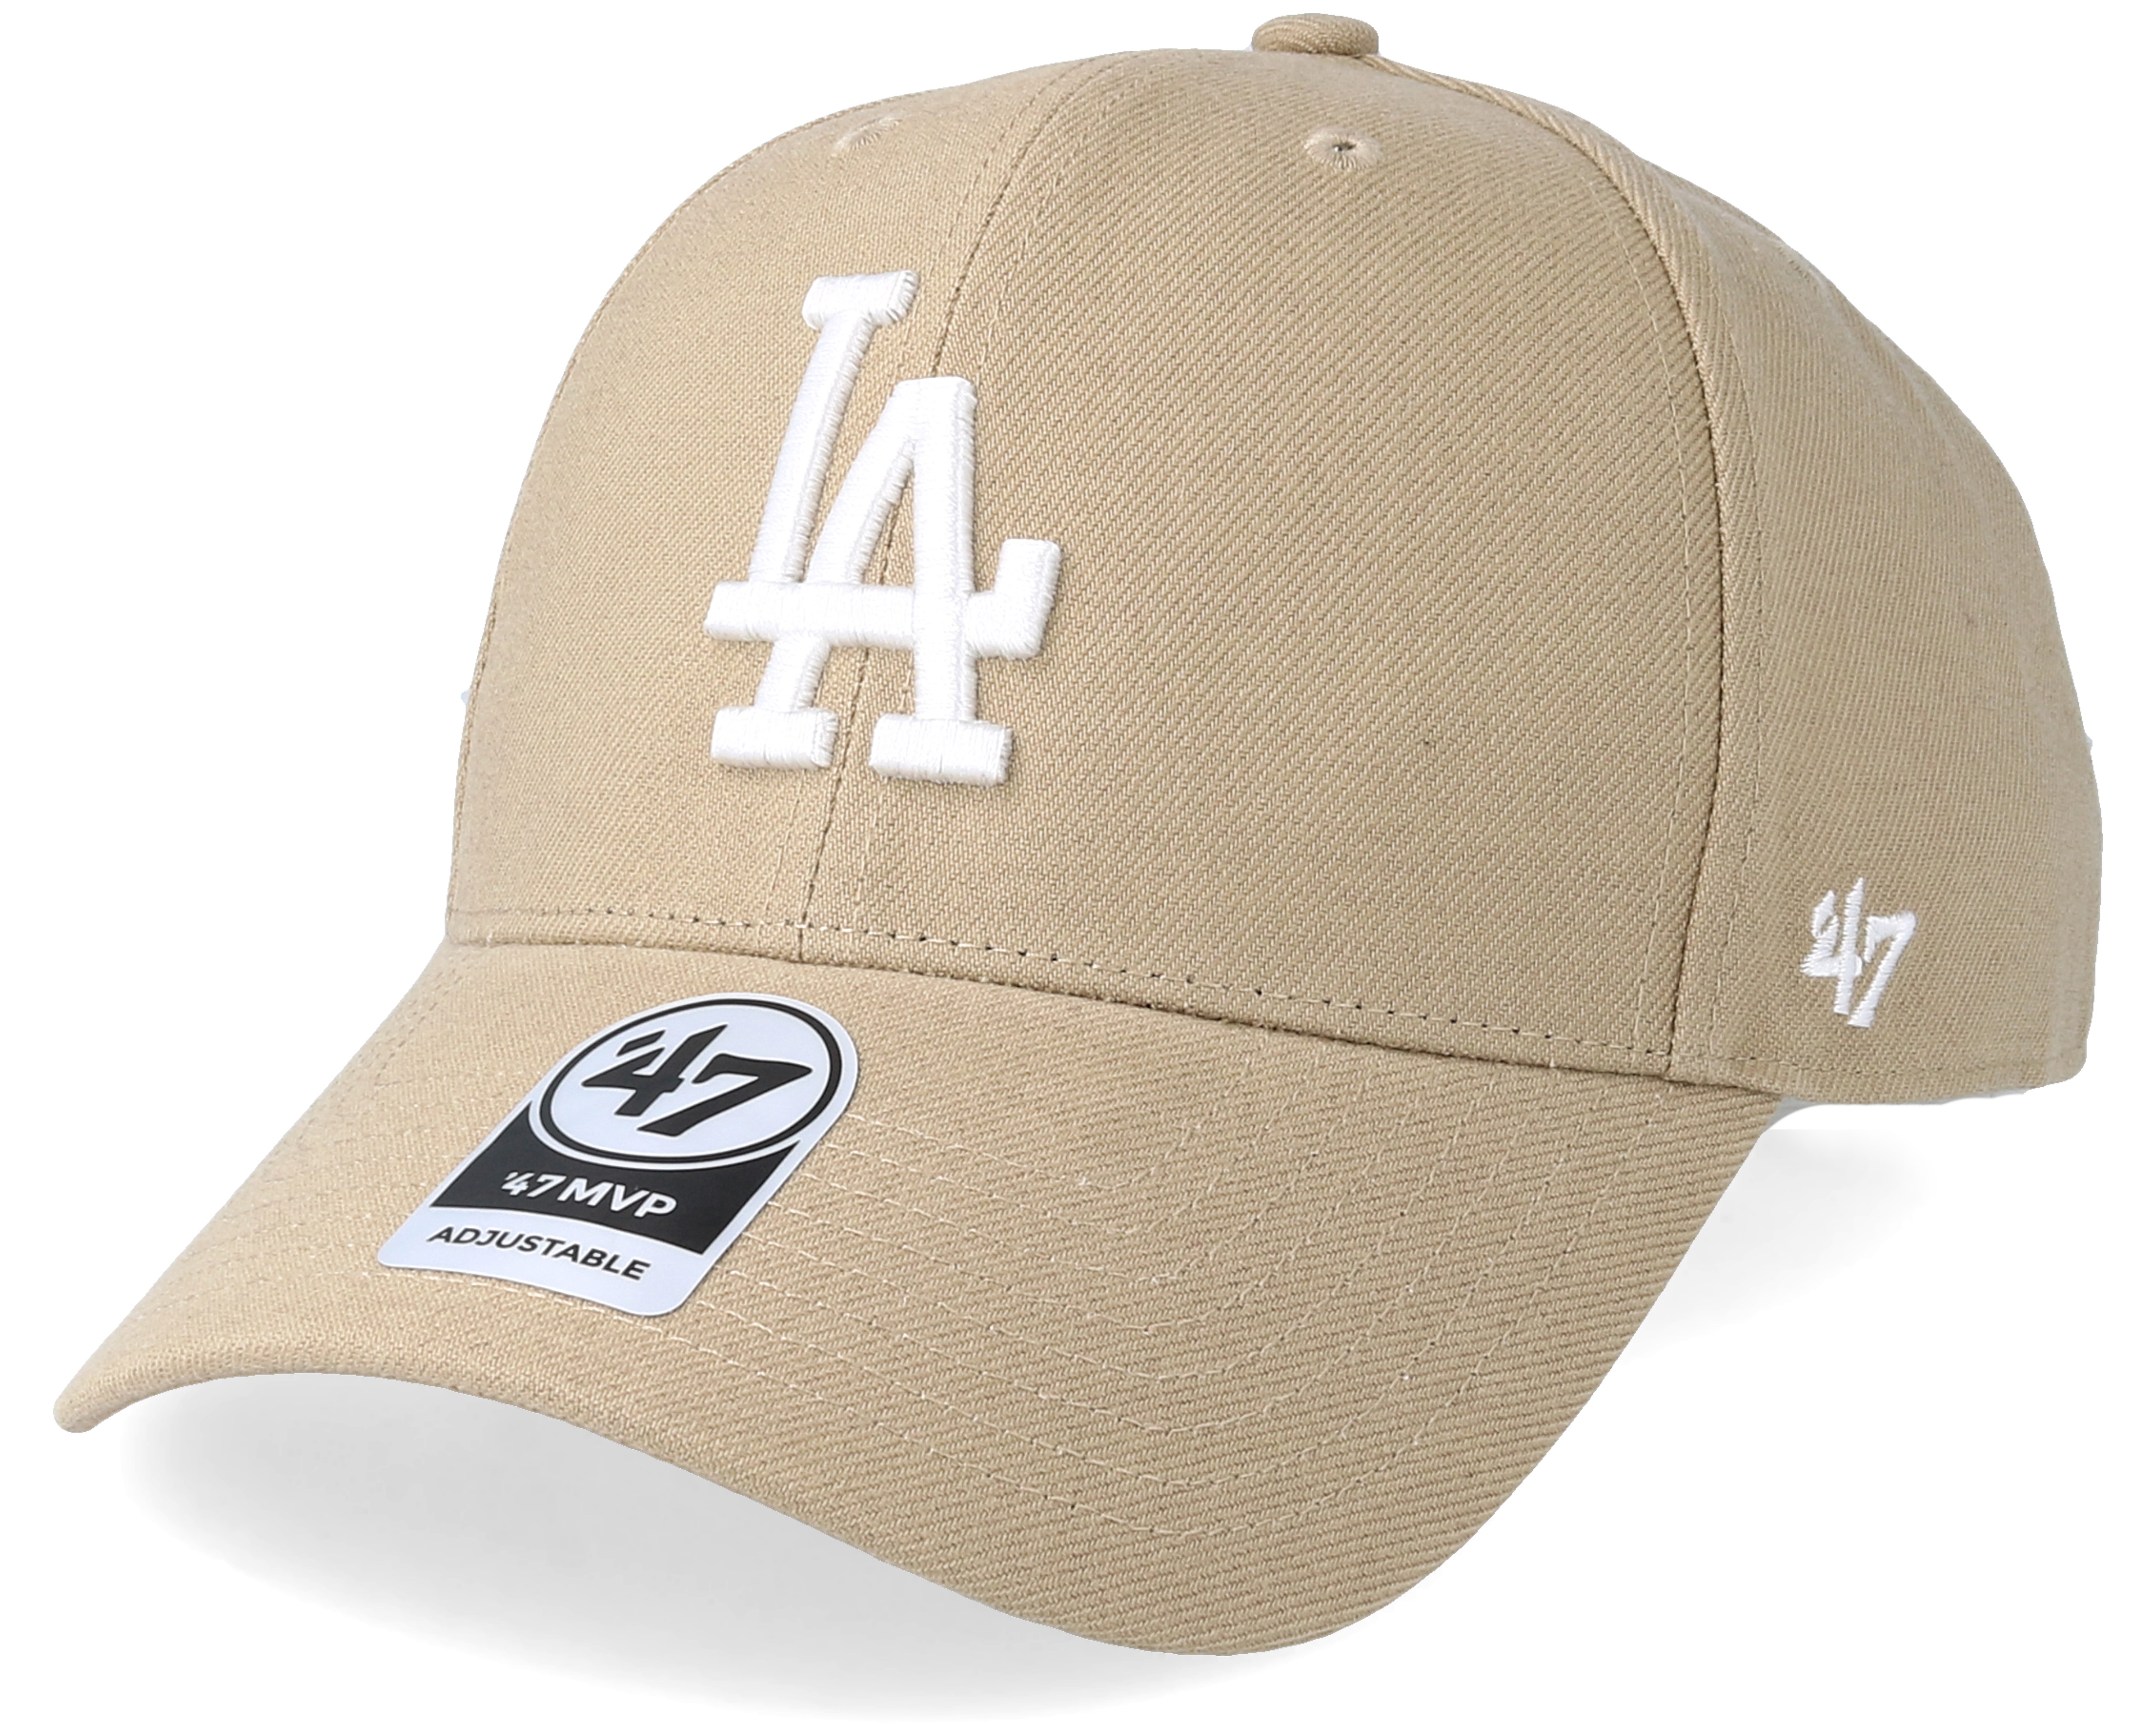 LA Dodgers Baseball Cap 47MVP Adjustable Hats for Men Women Outdoor Sun Hat